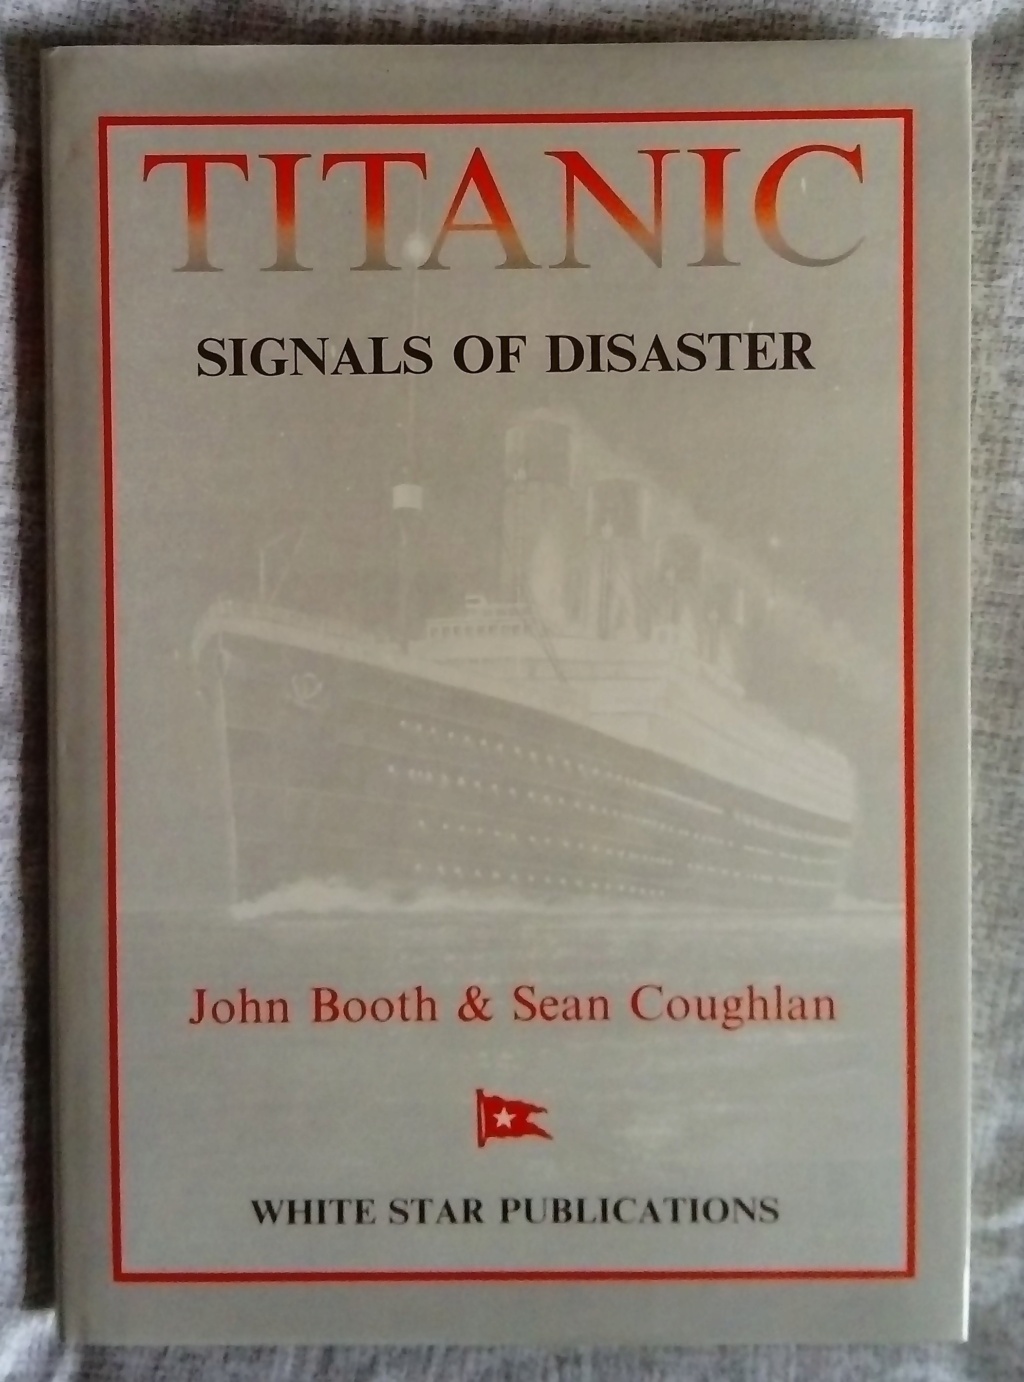 Vos livres préférés sur le Titanic - Page 6 Dsc_2512